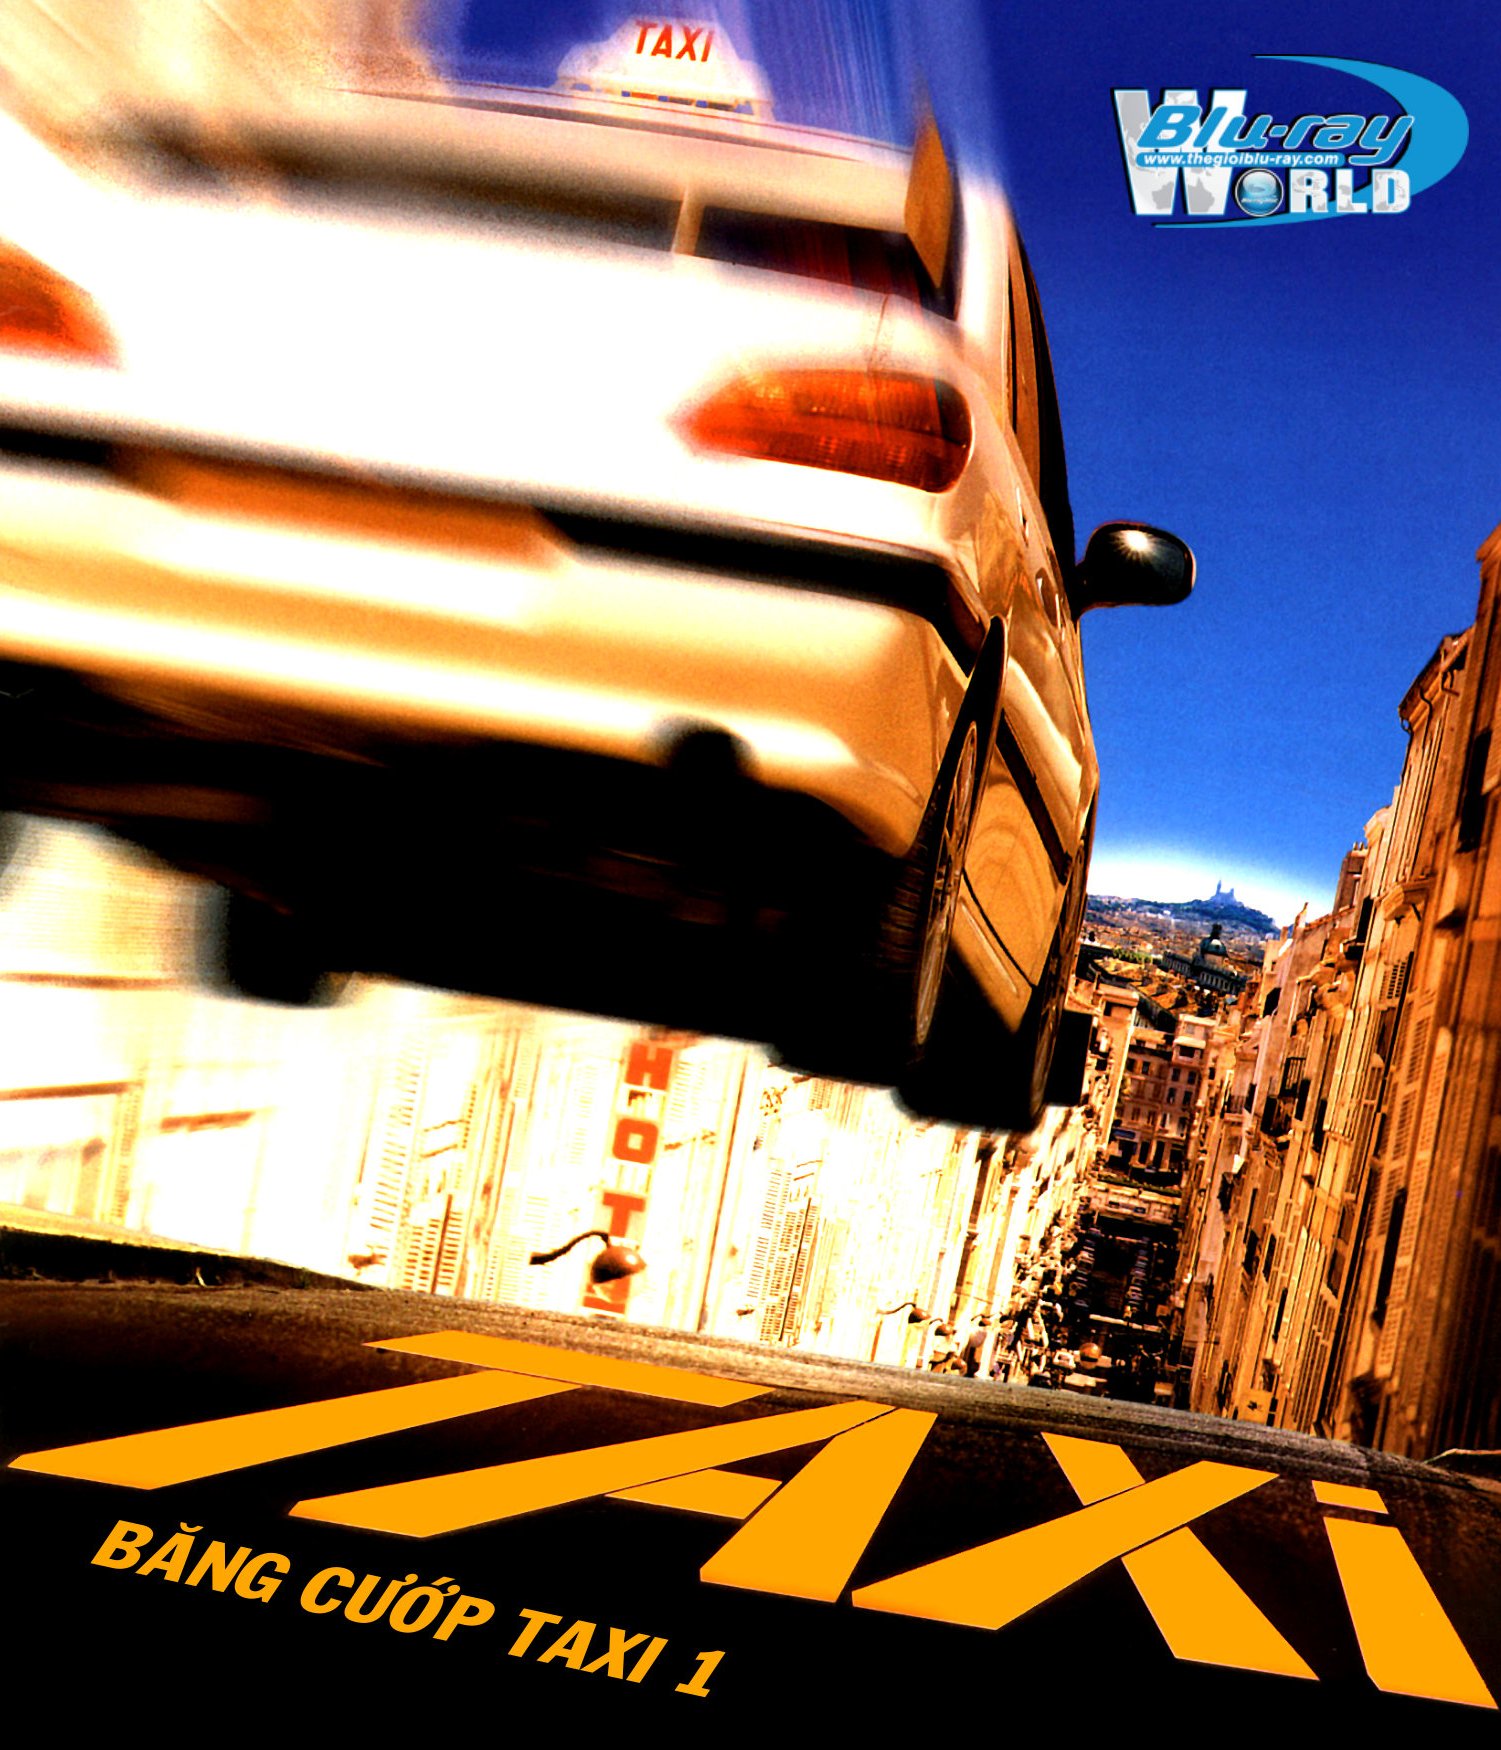 B1530. Taxi 1 1998 - BĂNG CƯỚP TAXI 1 2D 25G (DTS-HD MA 5.1) 